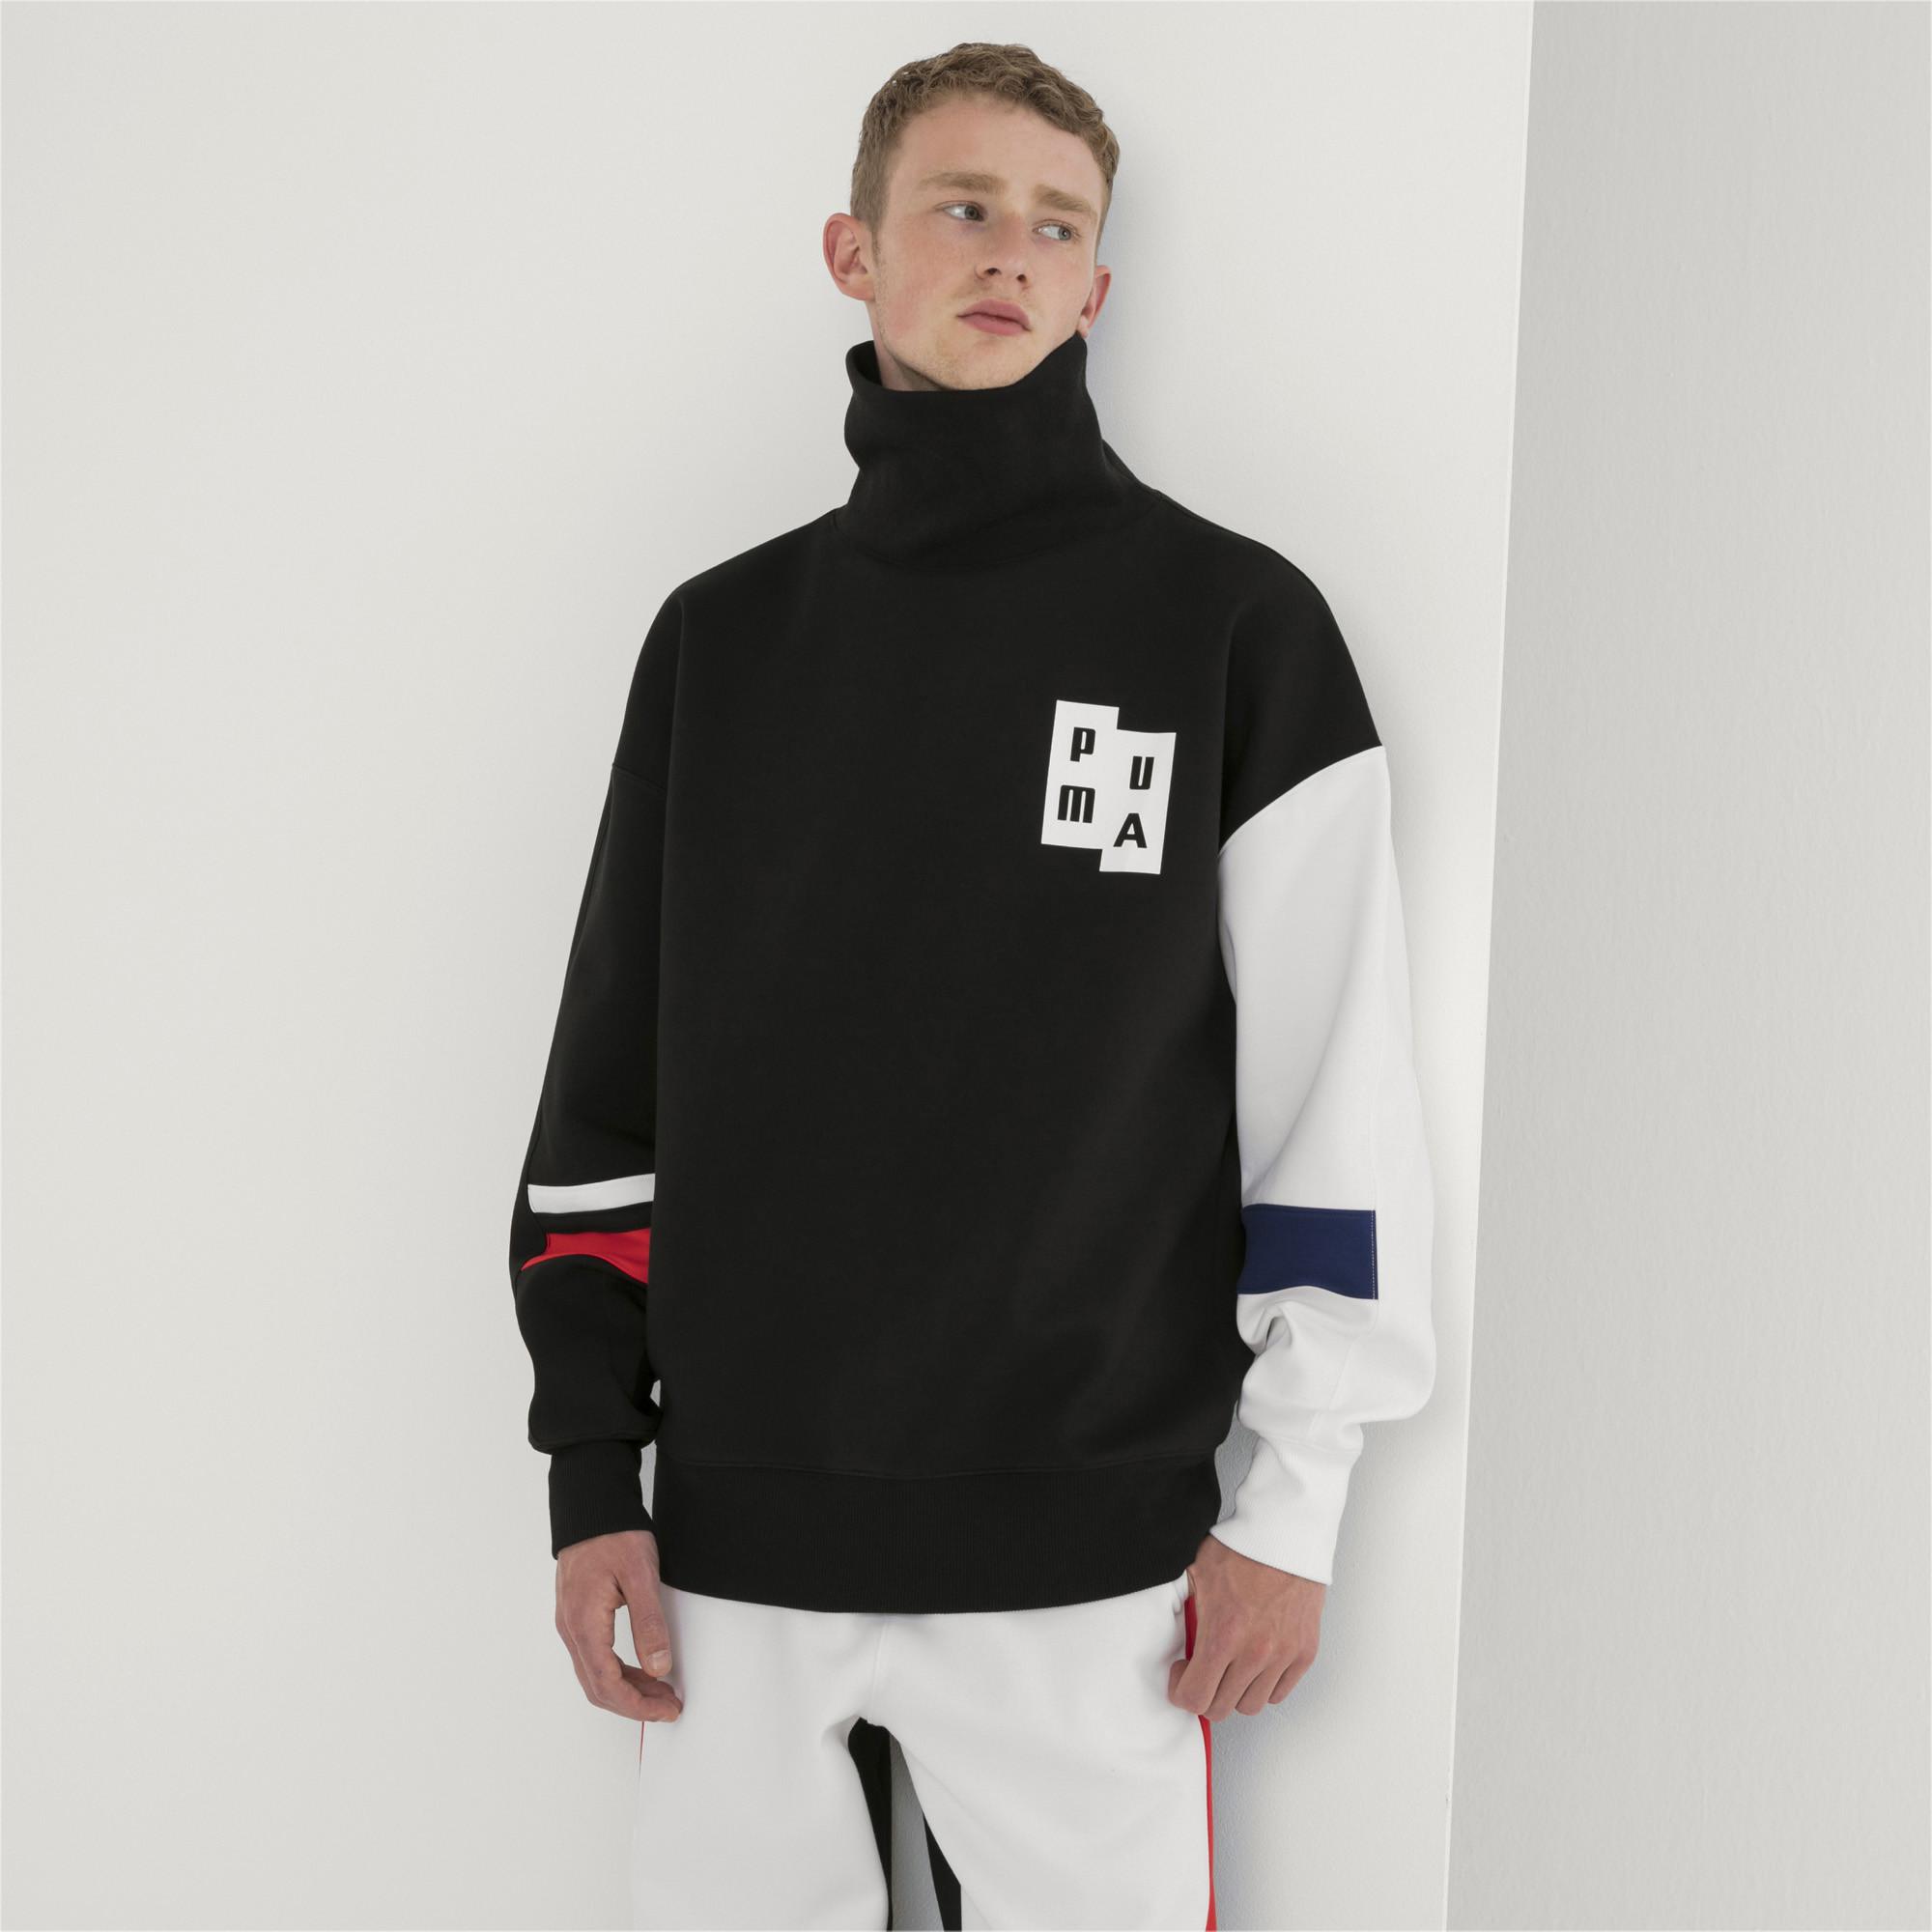 PUMA Cotton X Ader Error Turtleneck Sweatshirt in Black for Men - Lyst